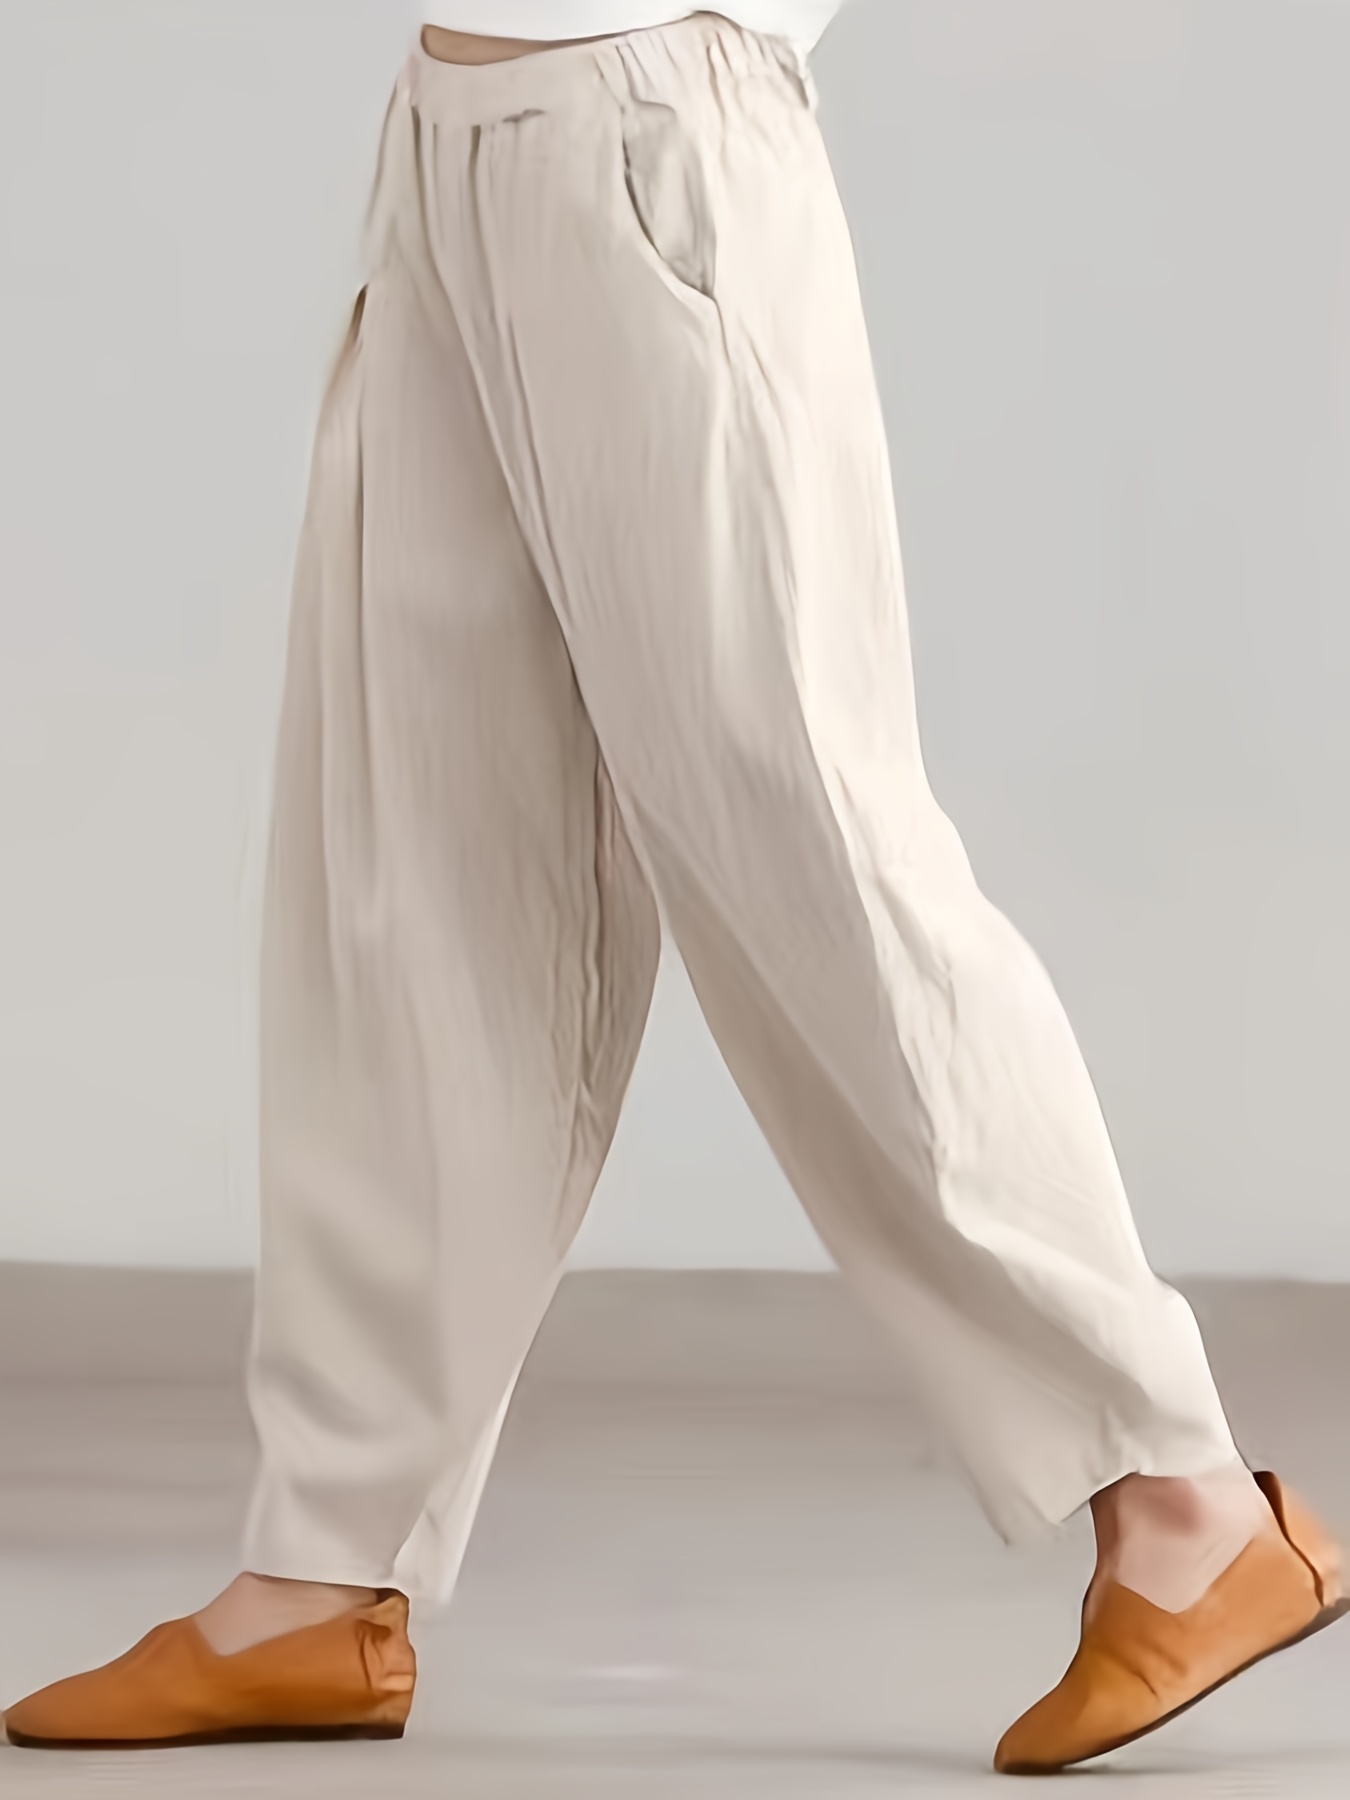 Linen Trousers Womens Women's Pants Casual High Waist Solid Summer